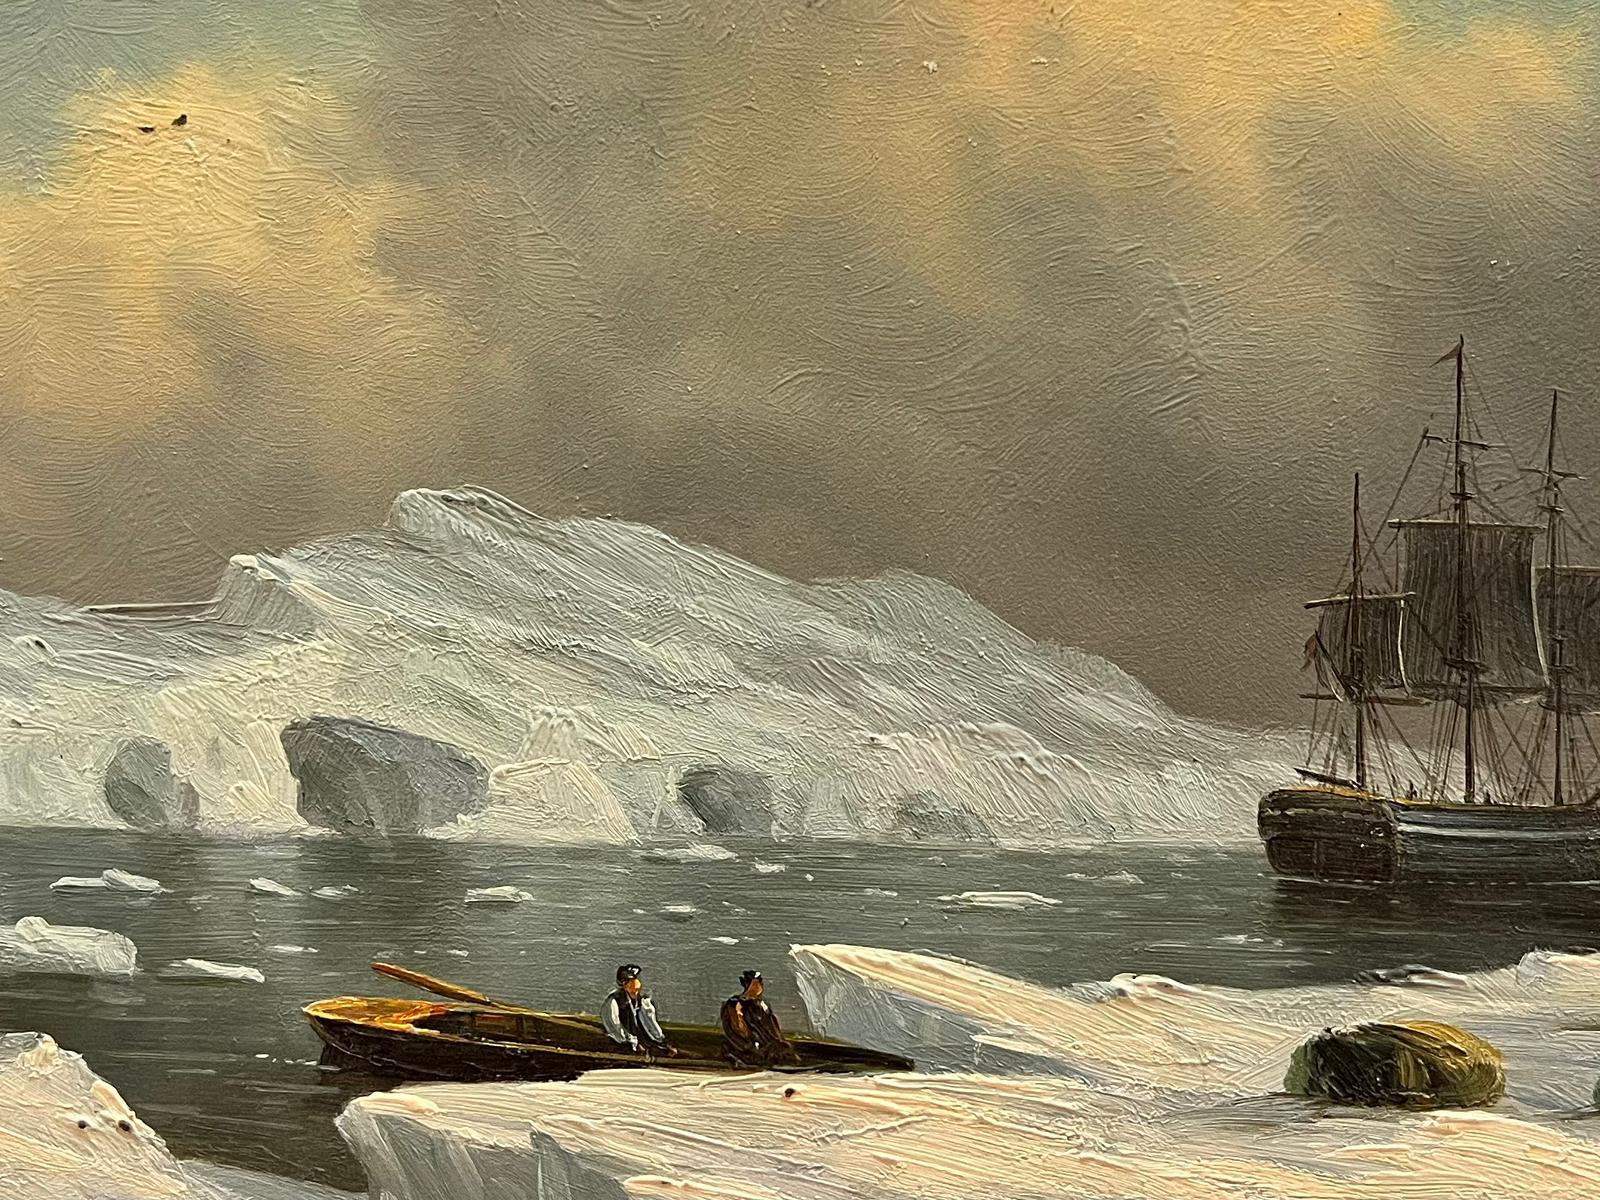 Grand navire à voile classique dans les eaux glacées, huile de marine anglaise signée - Painting de English marine